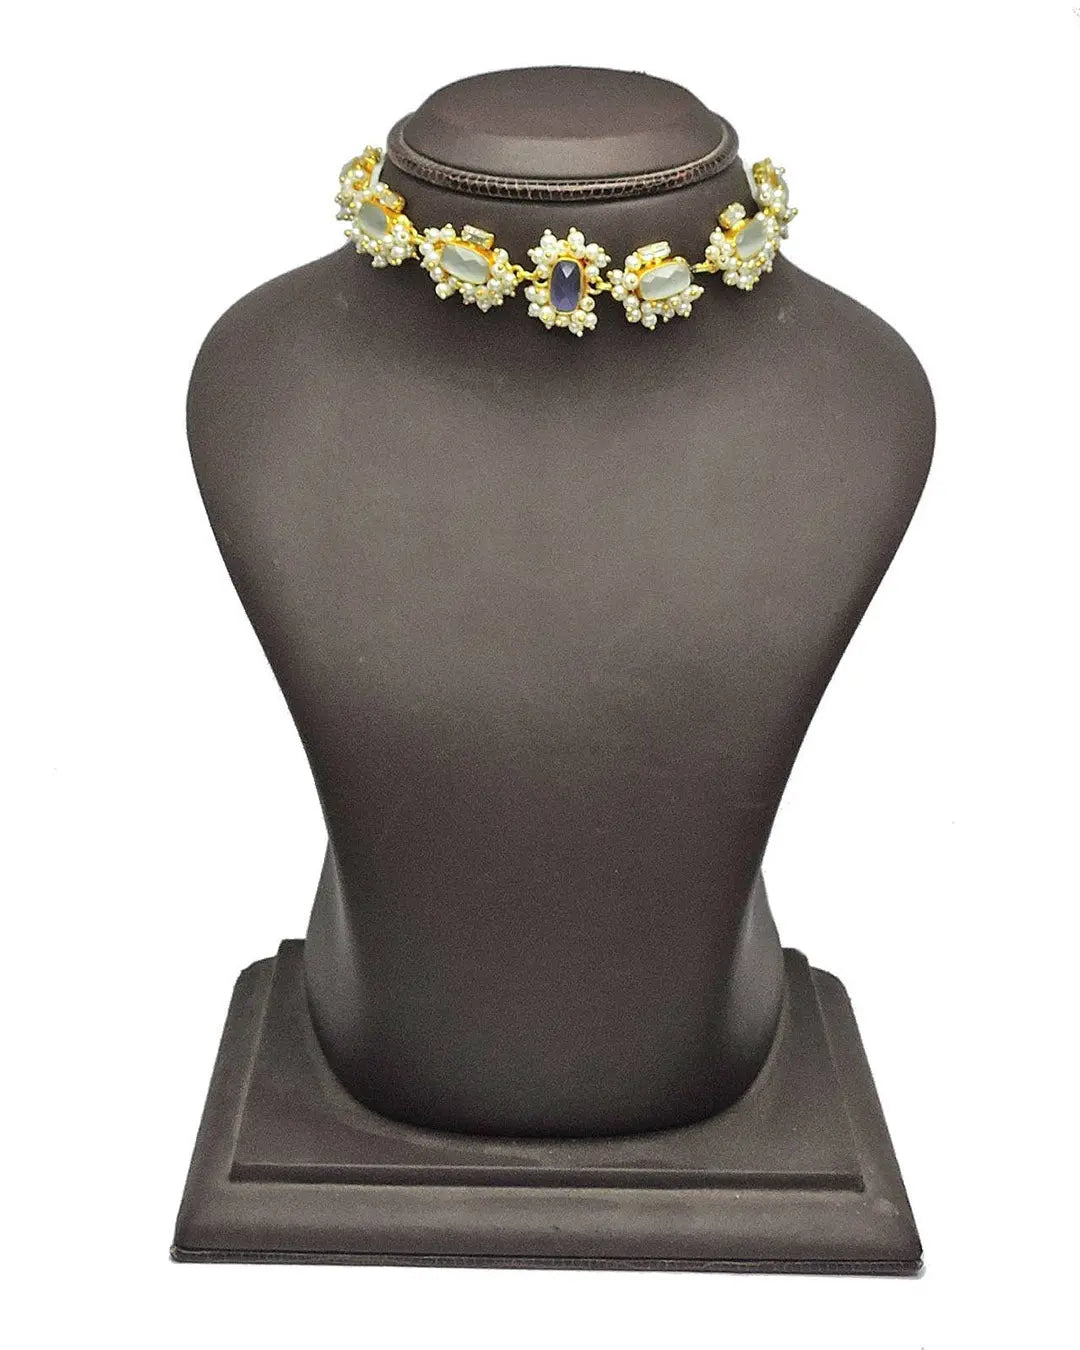 Yakal Choker- Handcrafted Jewellery from Dori